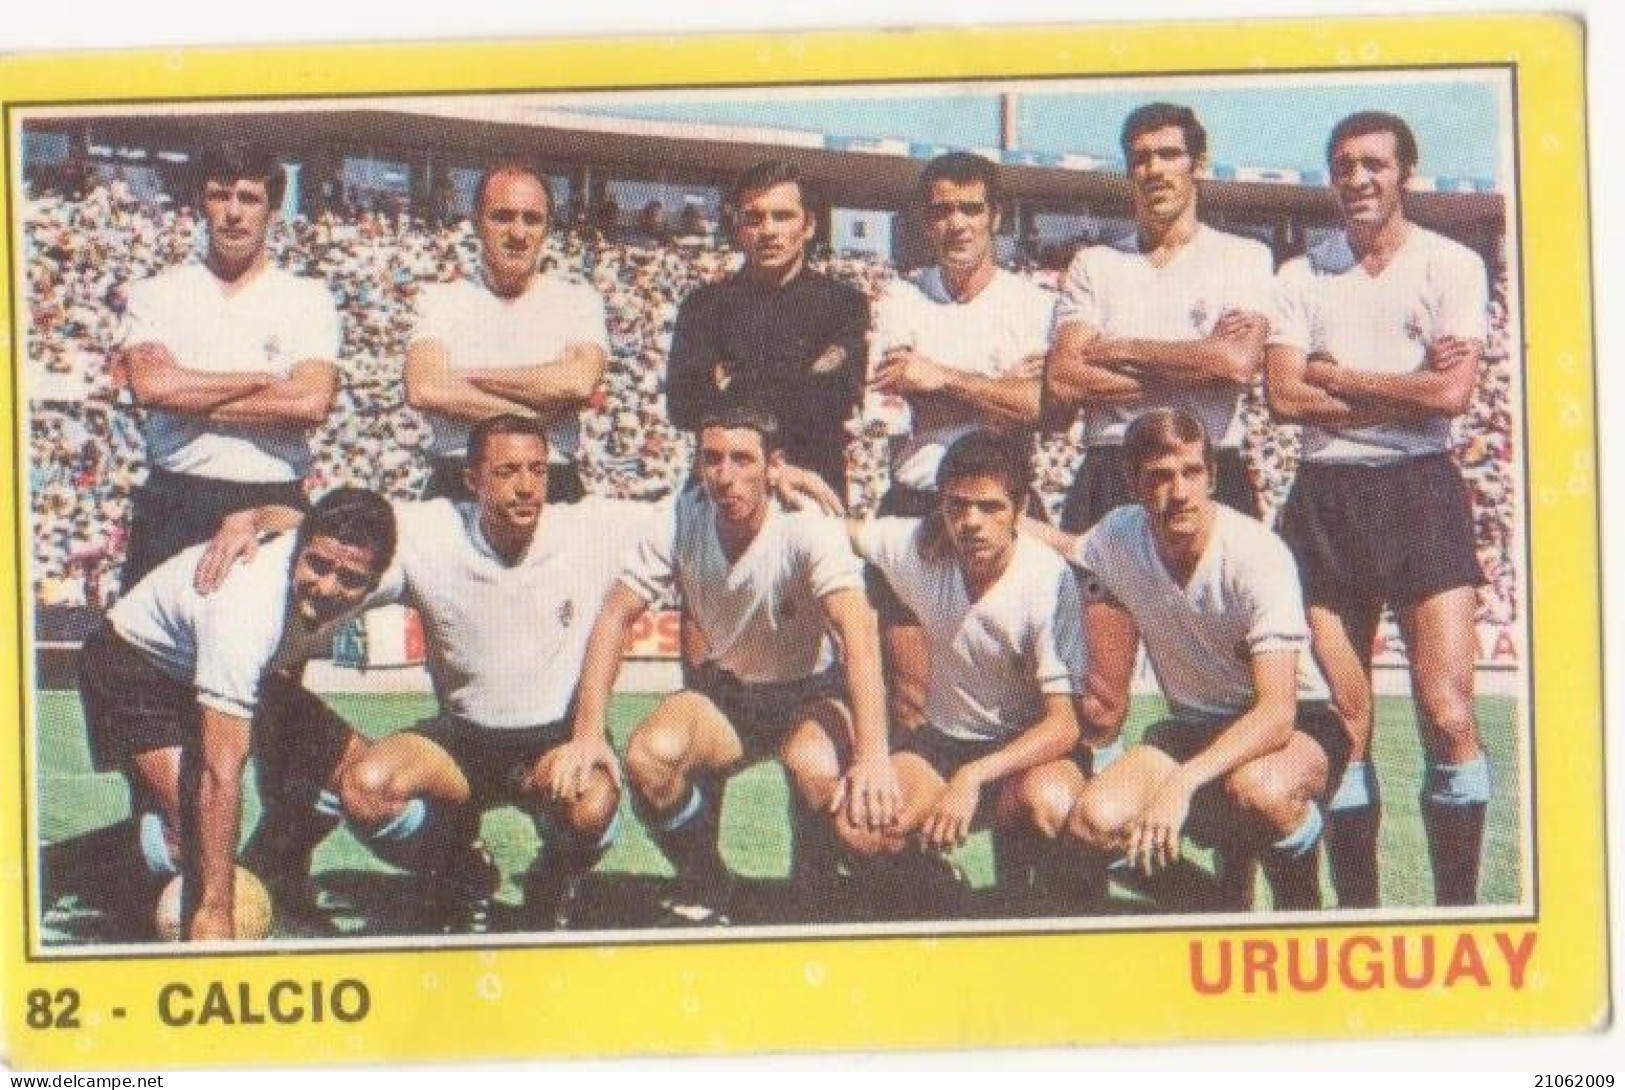 82 NAZIONALE URUGUAY CALCIO FOOTBALL SOCCER - VALIDA - CAMPIONI DELLO SPORT PANINI 1970-71 - Trading-Karten